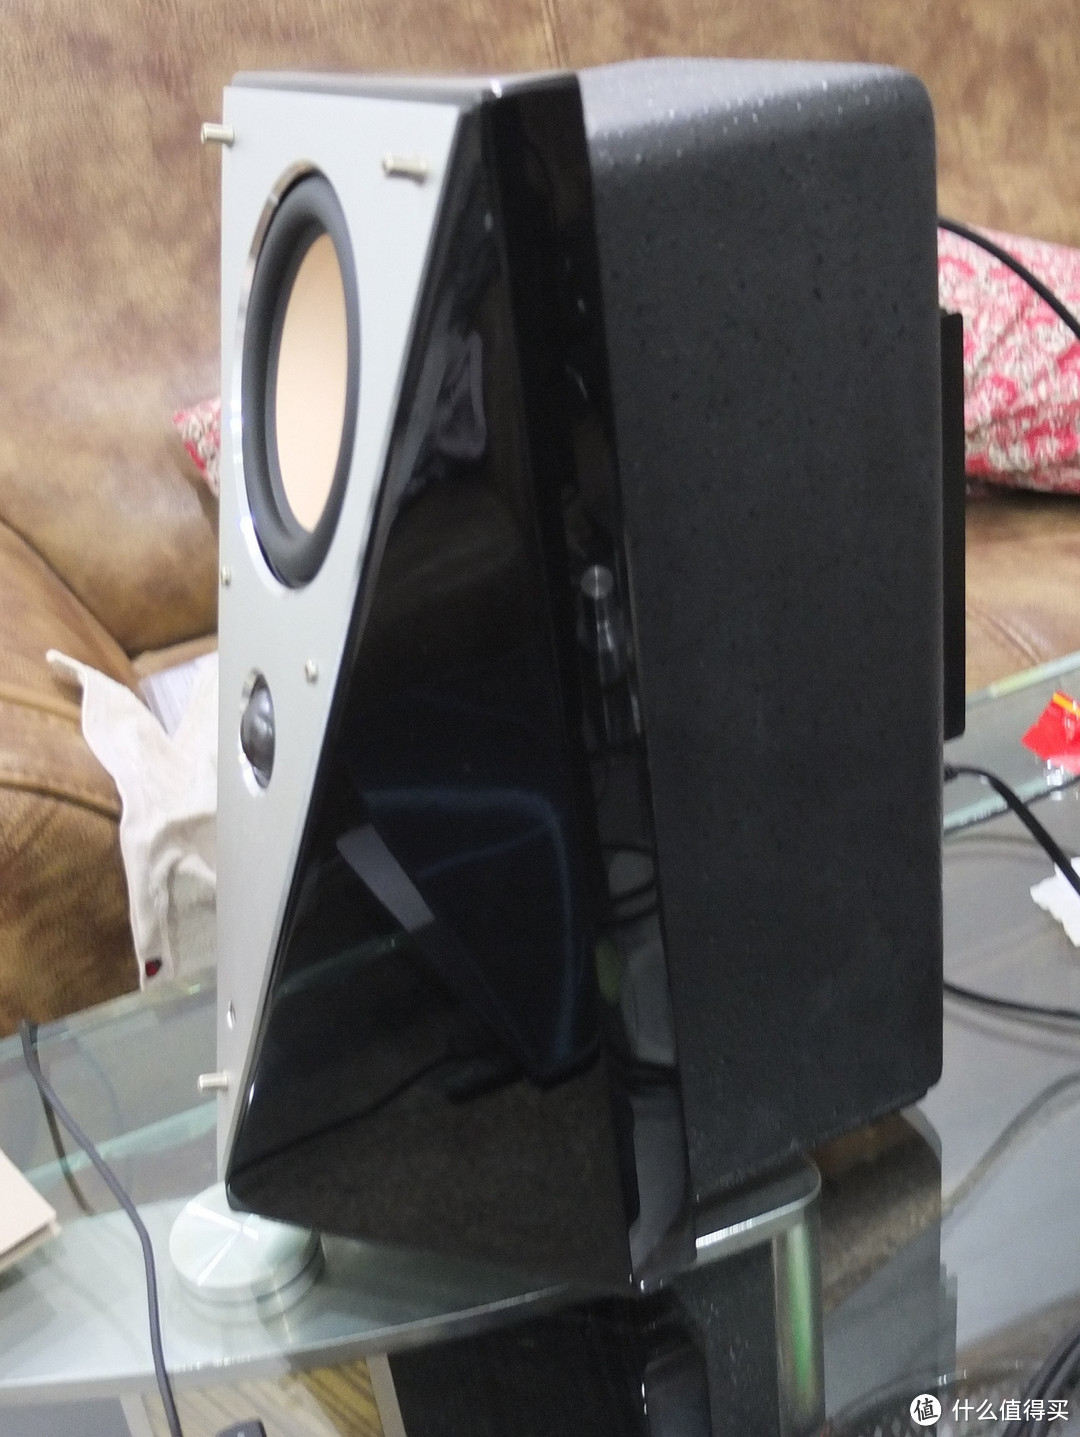 HiVi 惠威 2.0声道监听音箱 T200B，一个音乐低烧者的独白